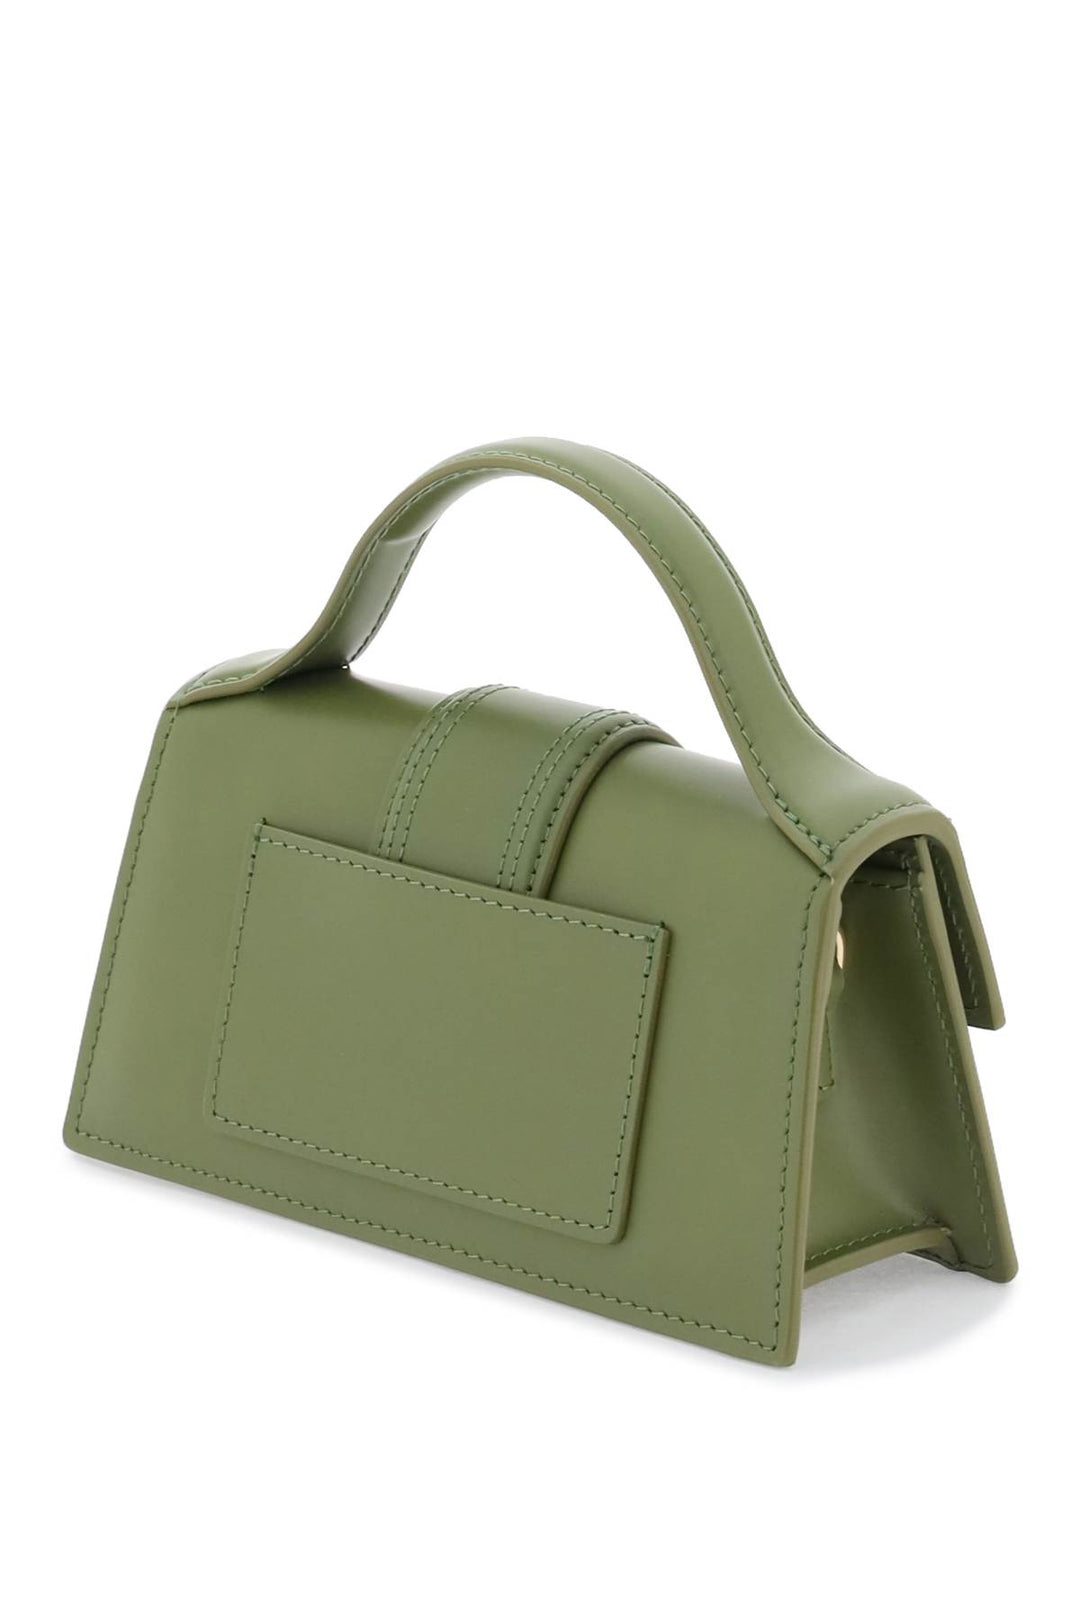 Jacquemus 'Le Bambino' Mini Bag   Green